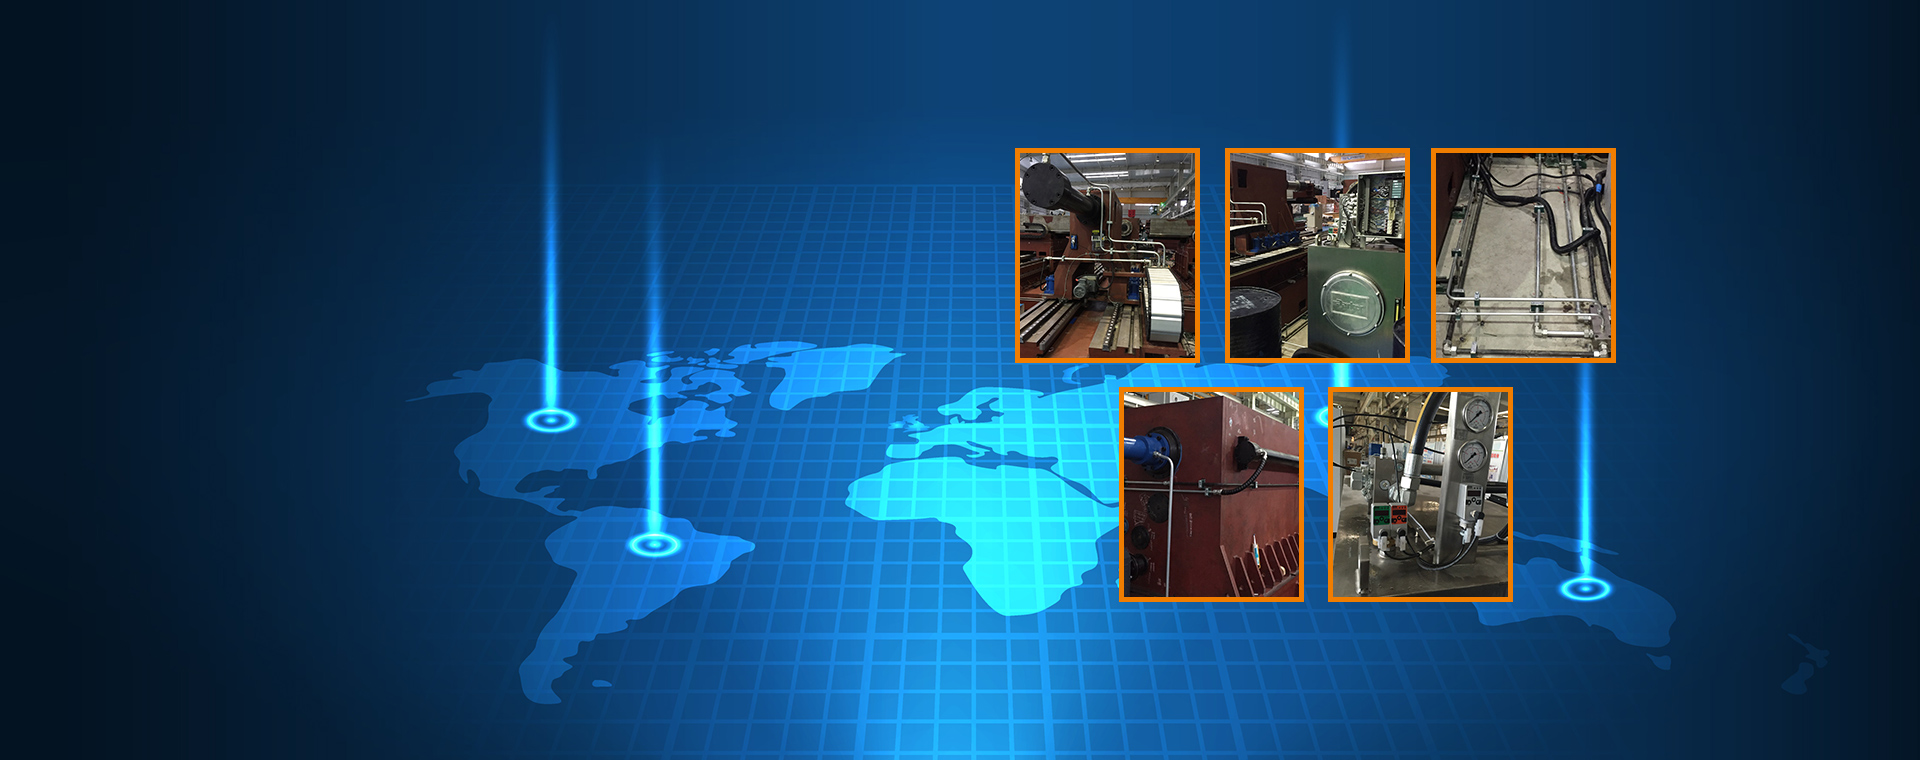 全球专业机电液压系统设备供应商 